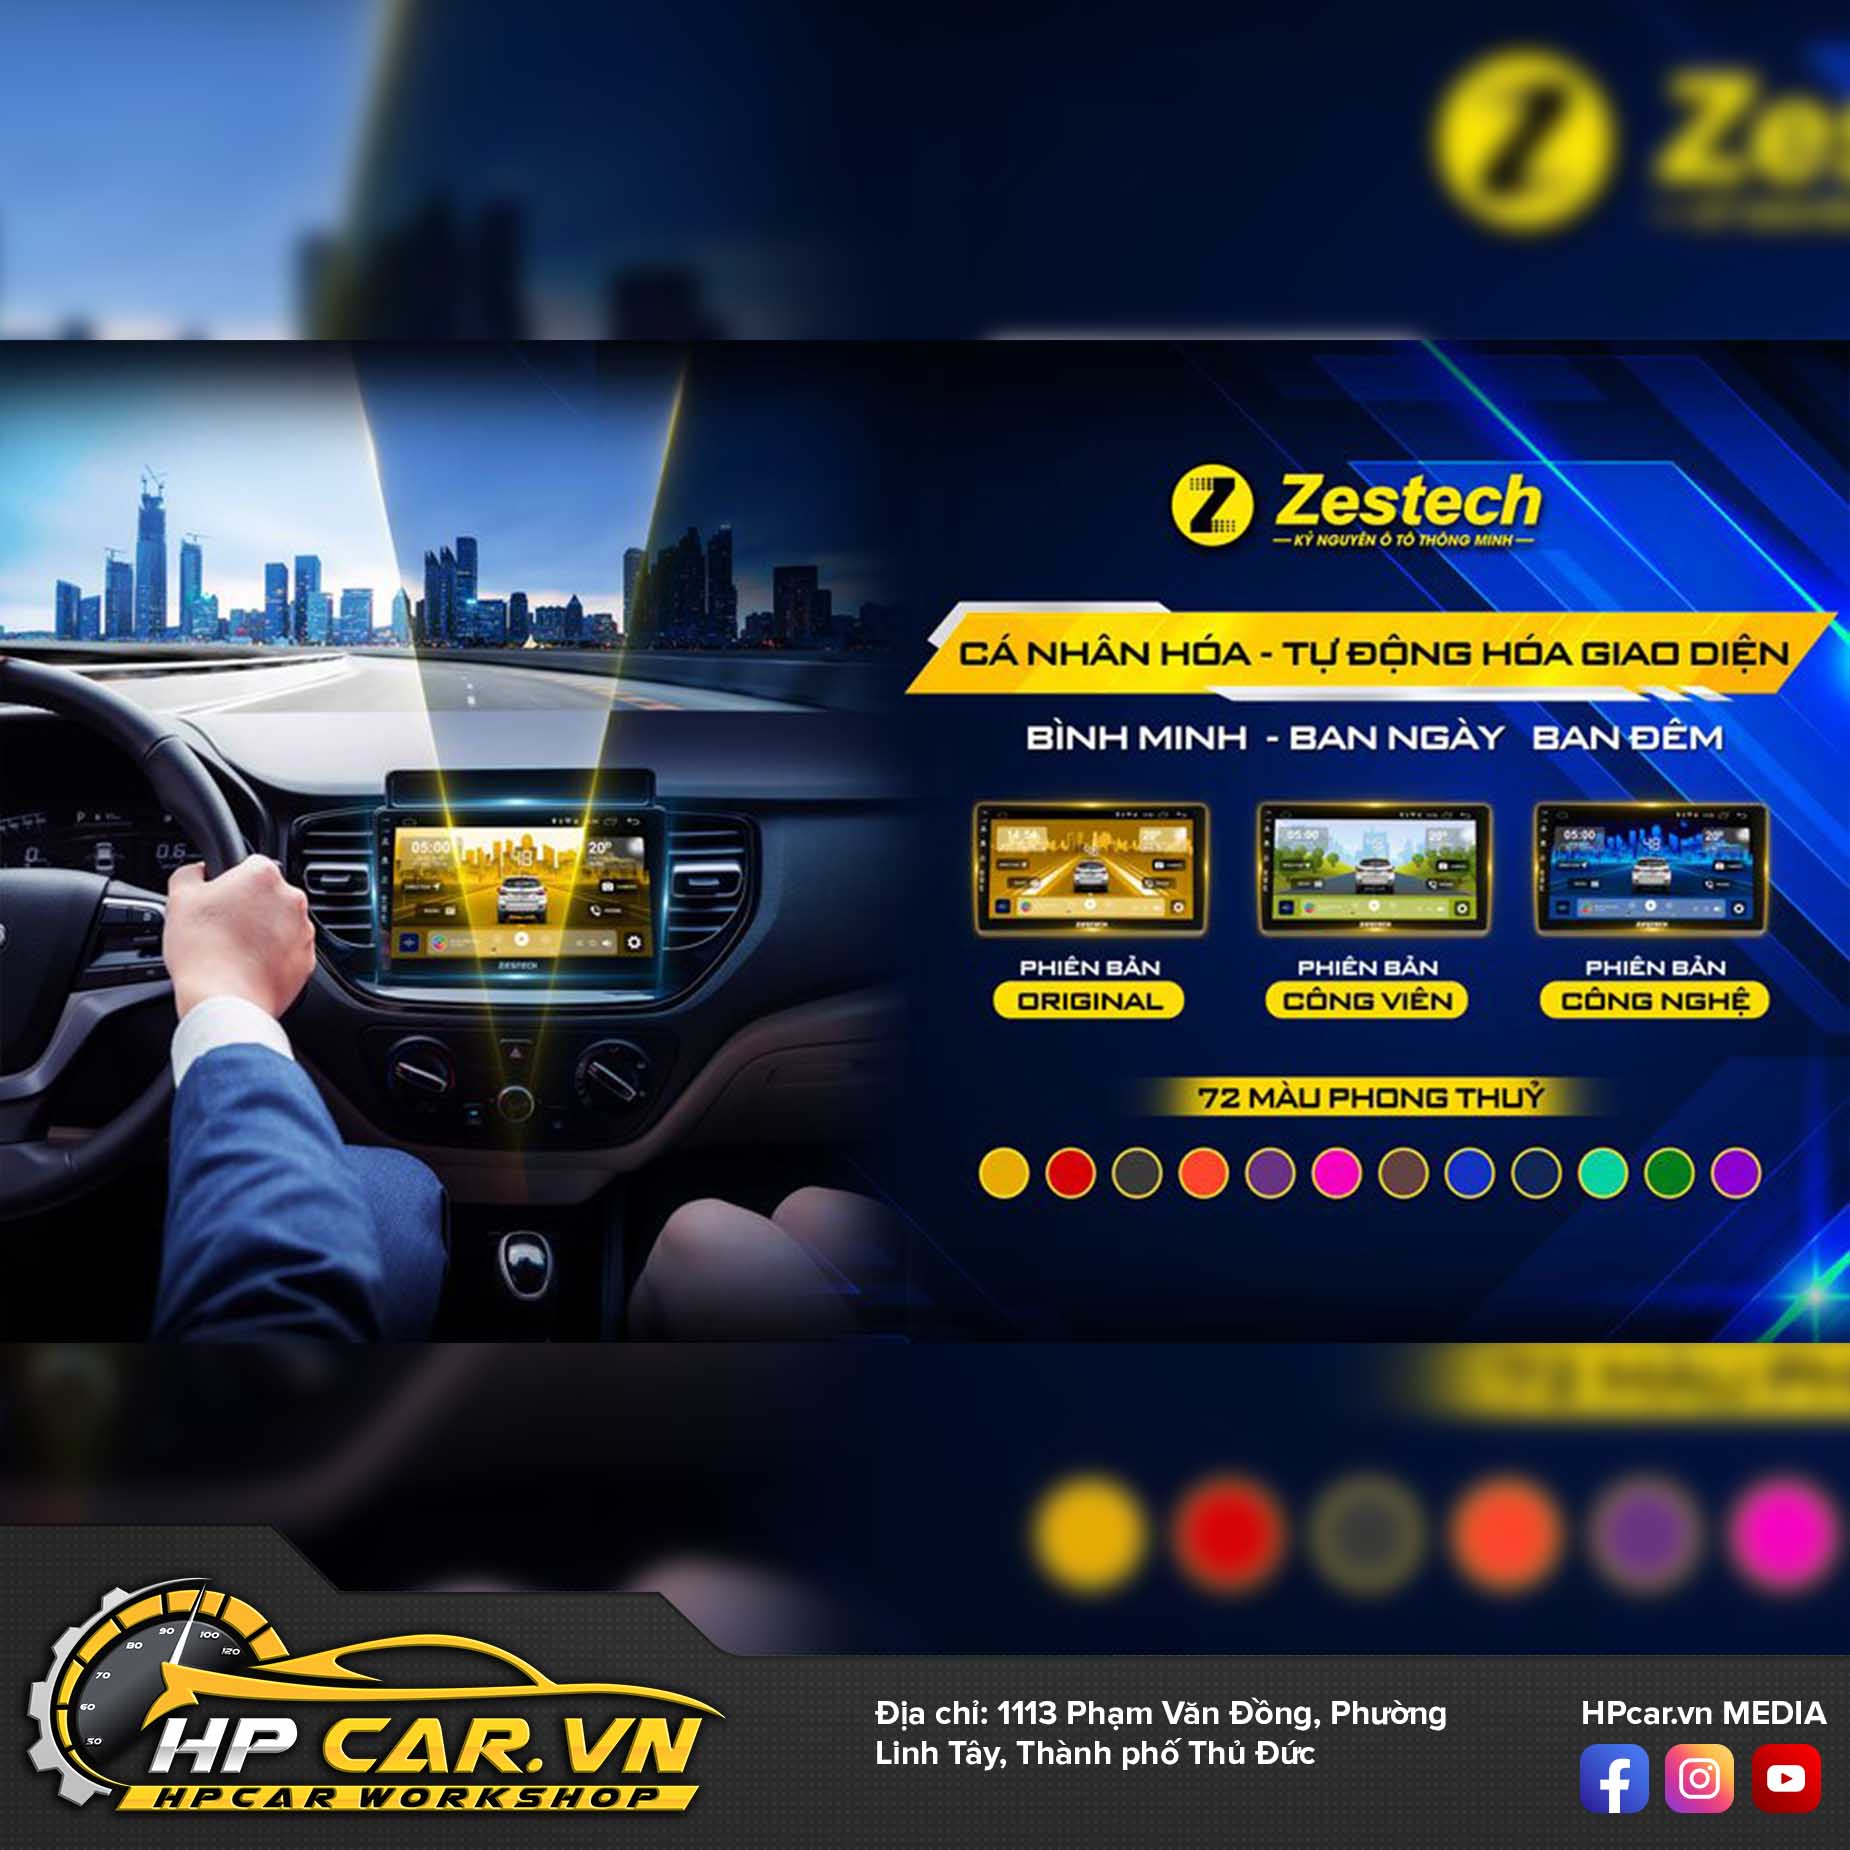 màn hình Zestech ZT12.3 Bản tiêu chuẩn